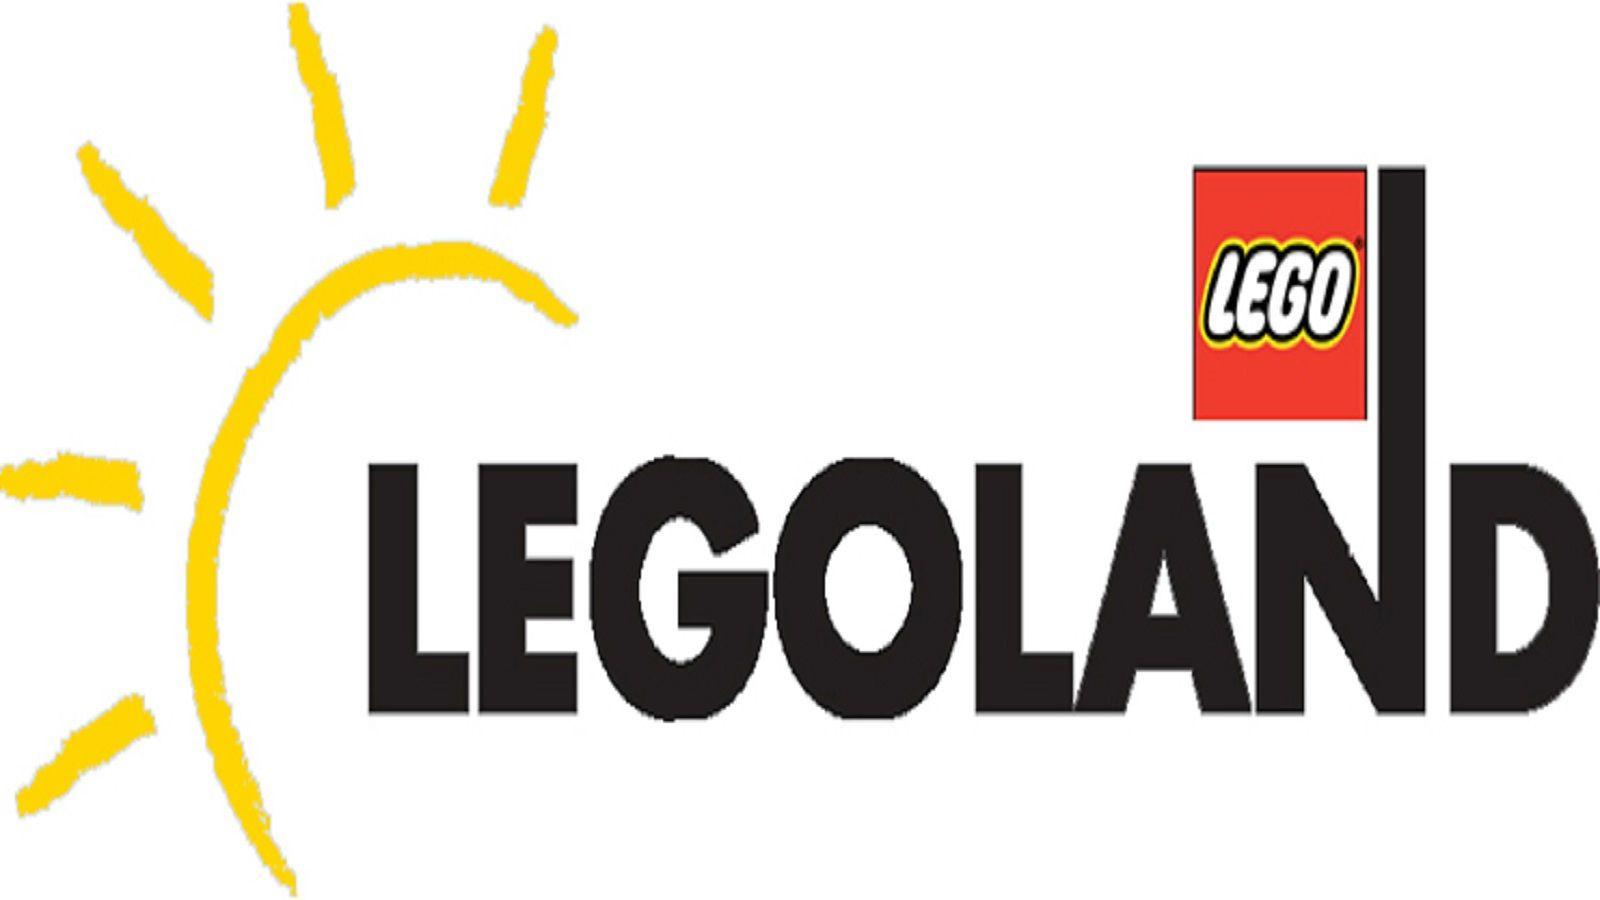 Legoland Logo - Legoland discovery center Logos